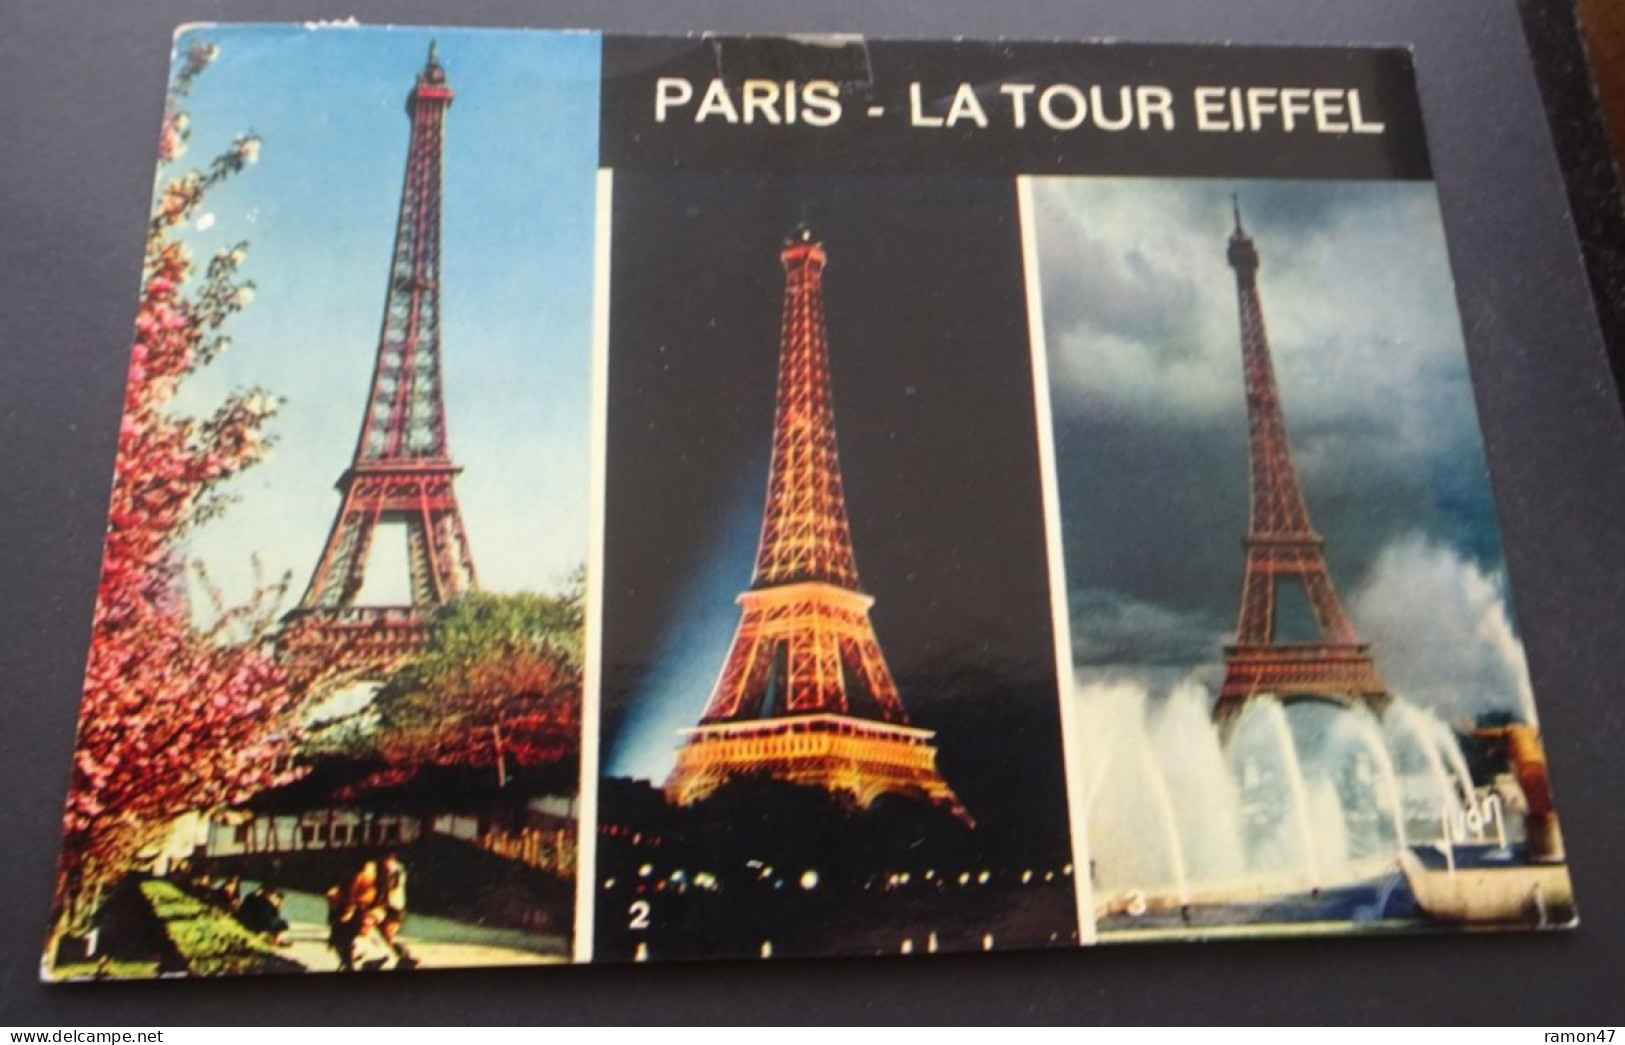 Paris - La Tour Eiffel - Editions D'art Yvon Paris - Tour Eiffel